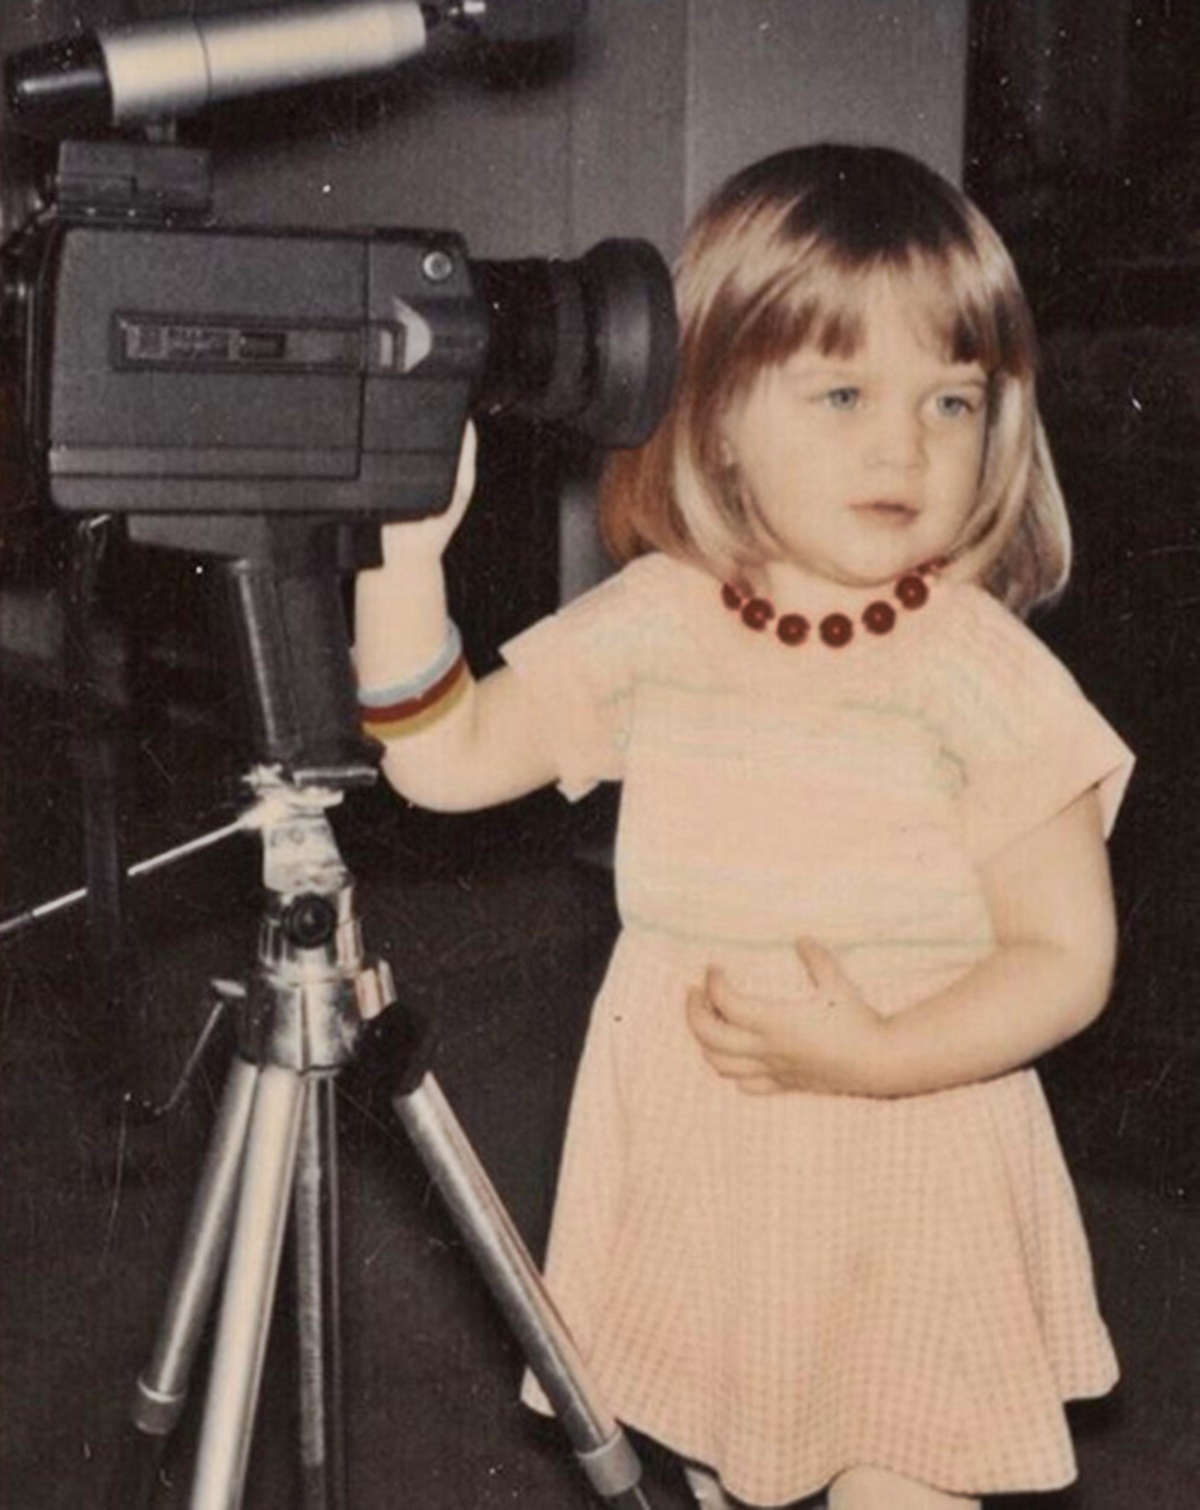 Reese Witherspoon gyerekkori fotójától elolvadunk - Így nézett ki a színésznő óvodás korában